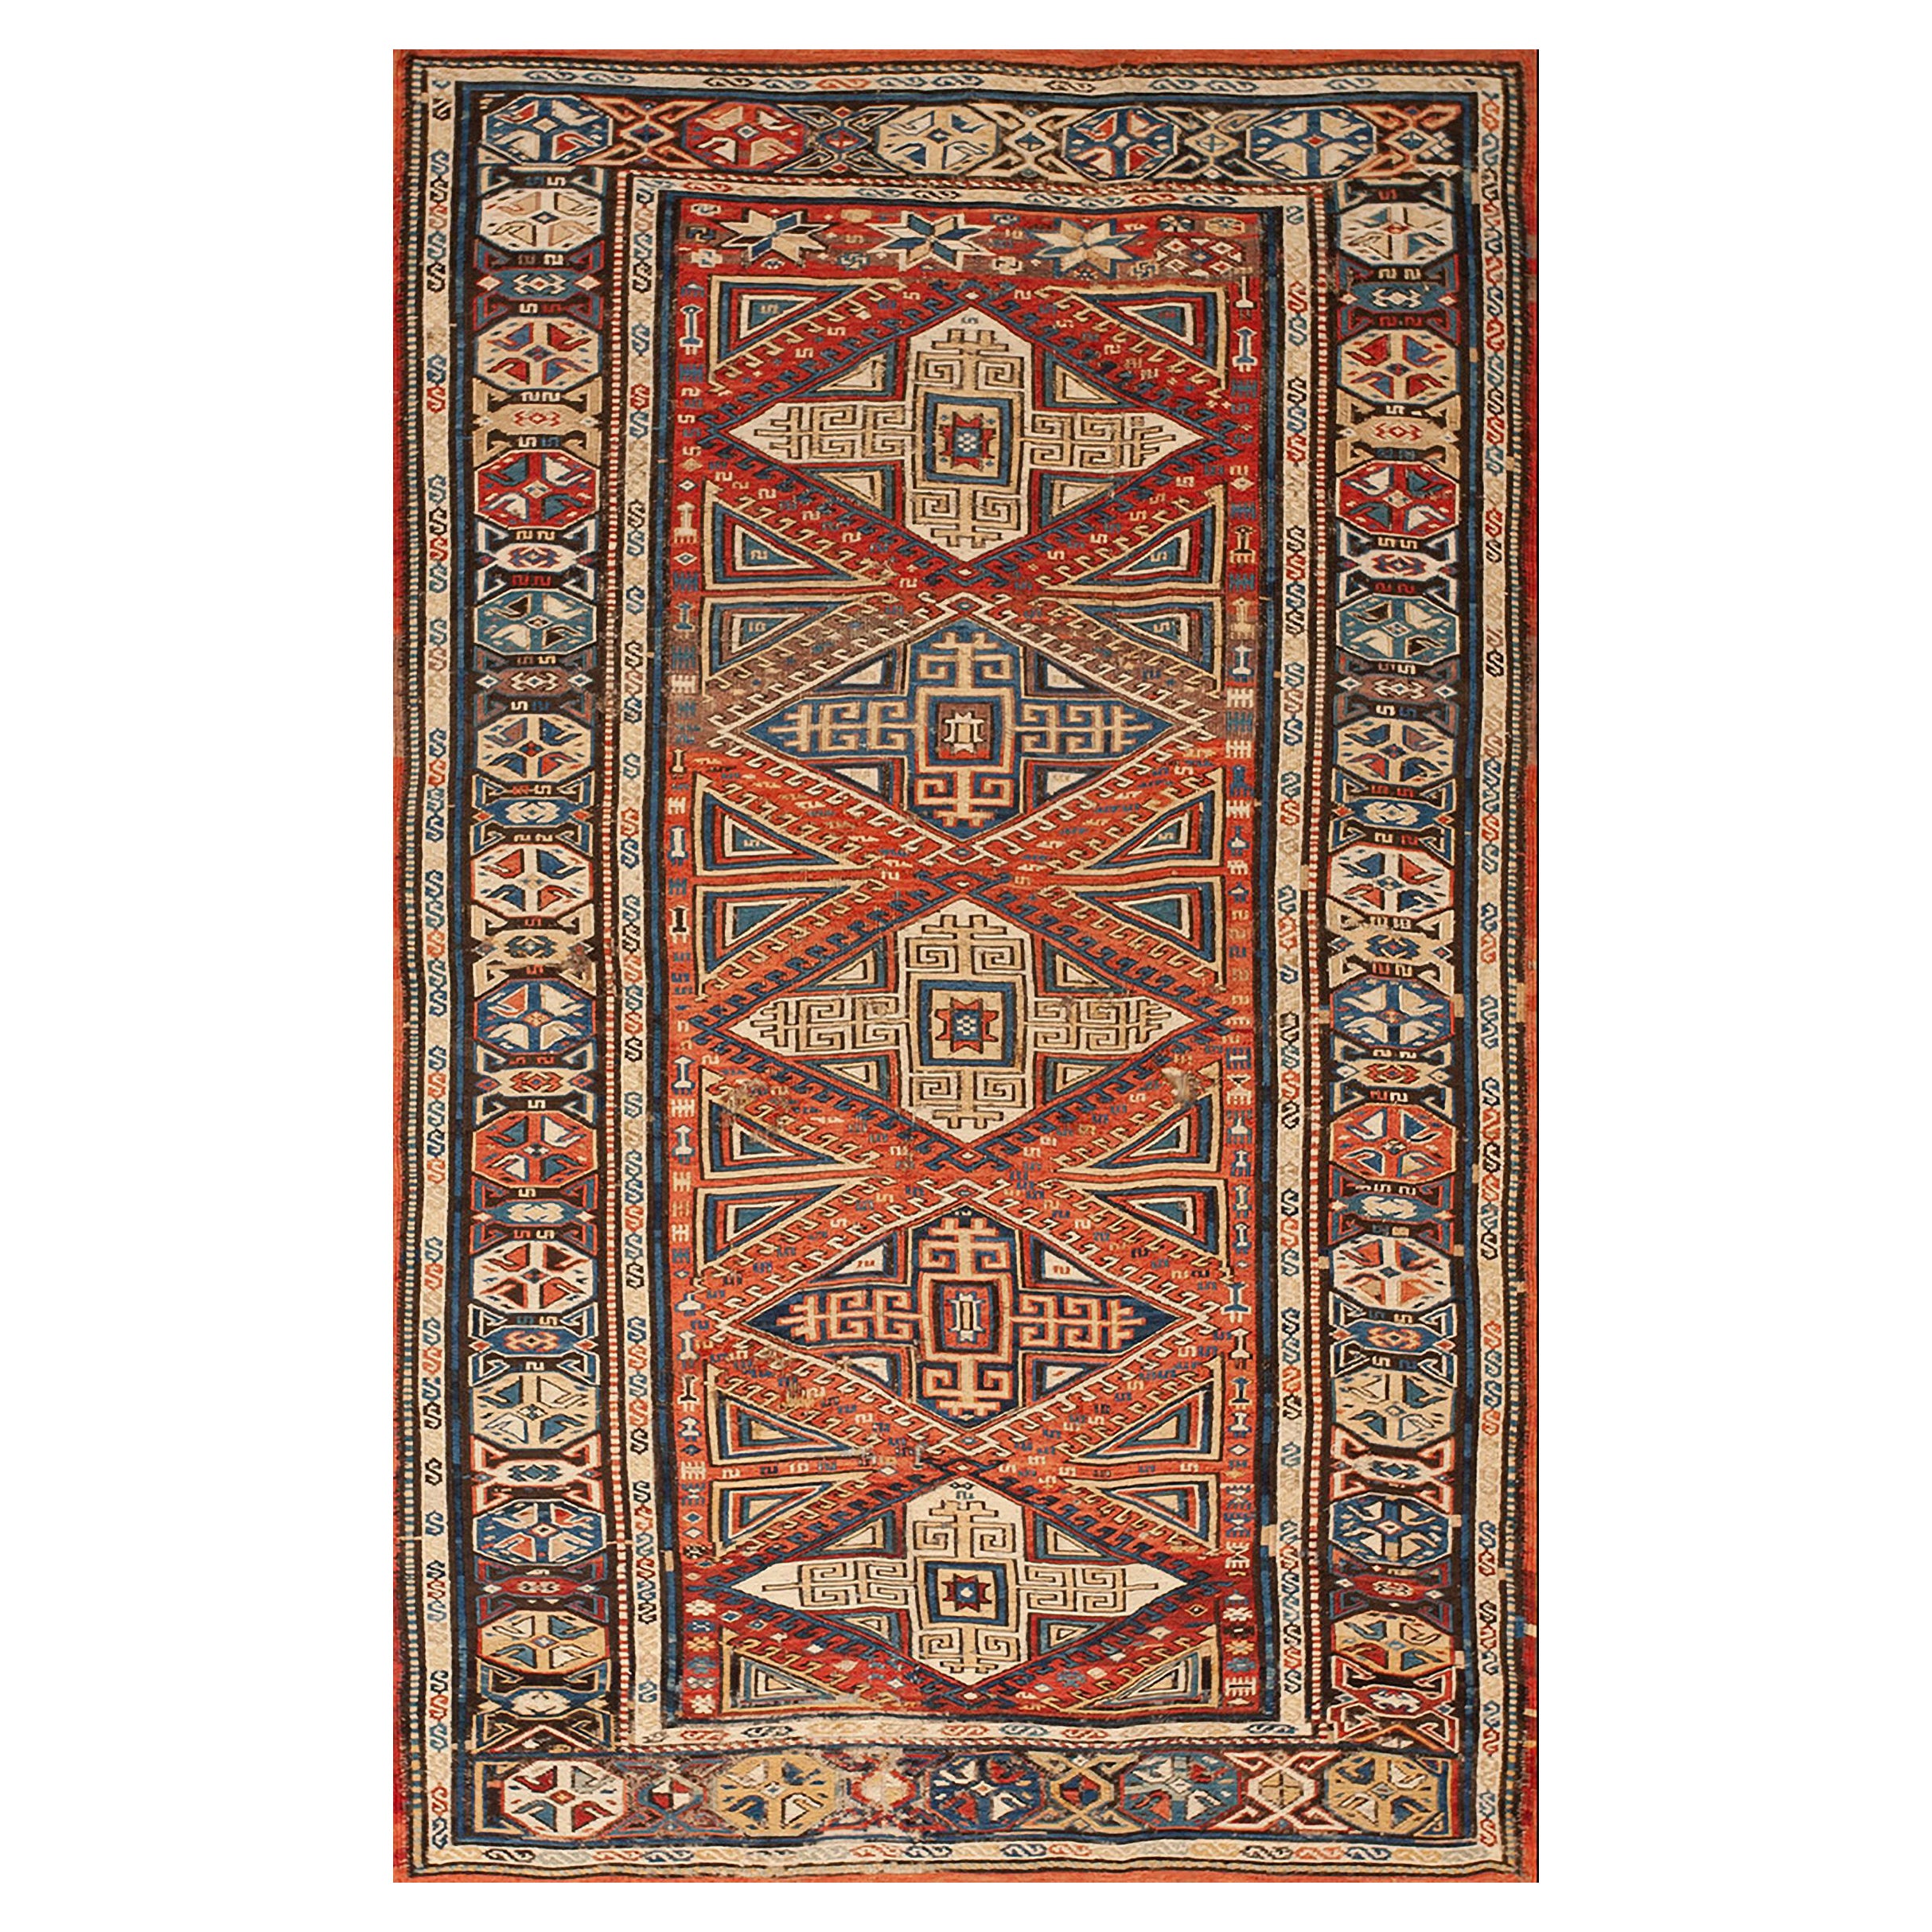 Kaukasischer Sumak-Teppich aus dem 19. Jahrhundert ( 3'8" x 6'3" - 112 x 191")